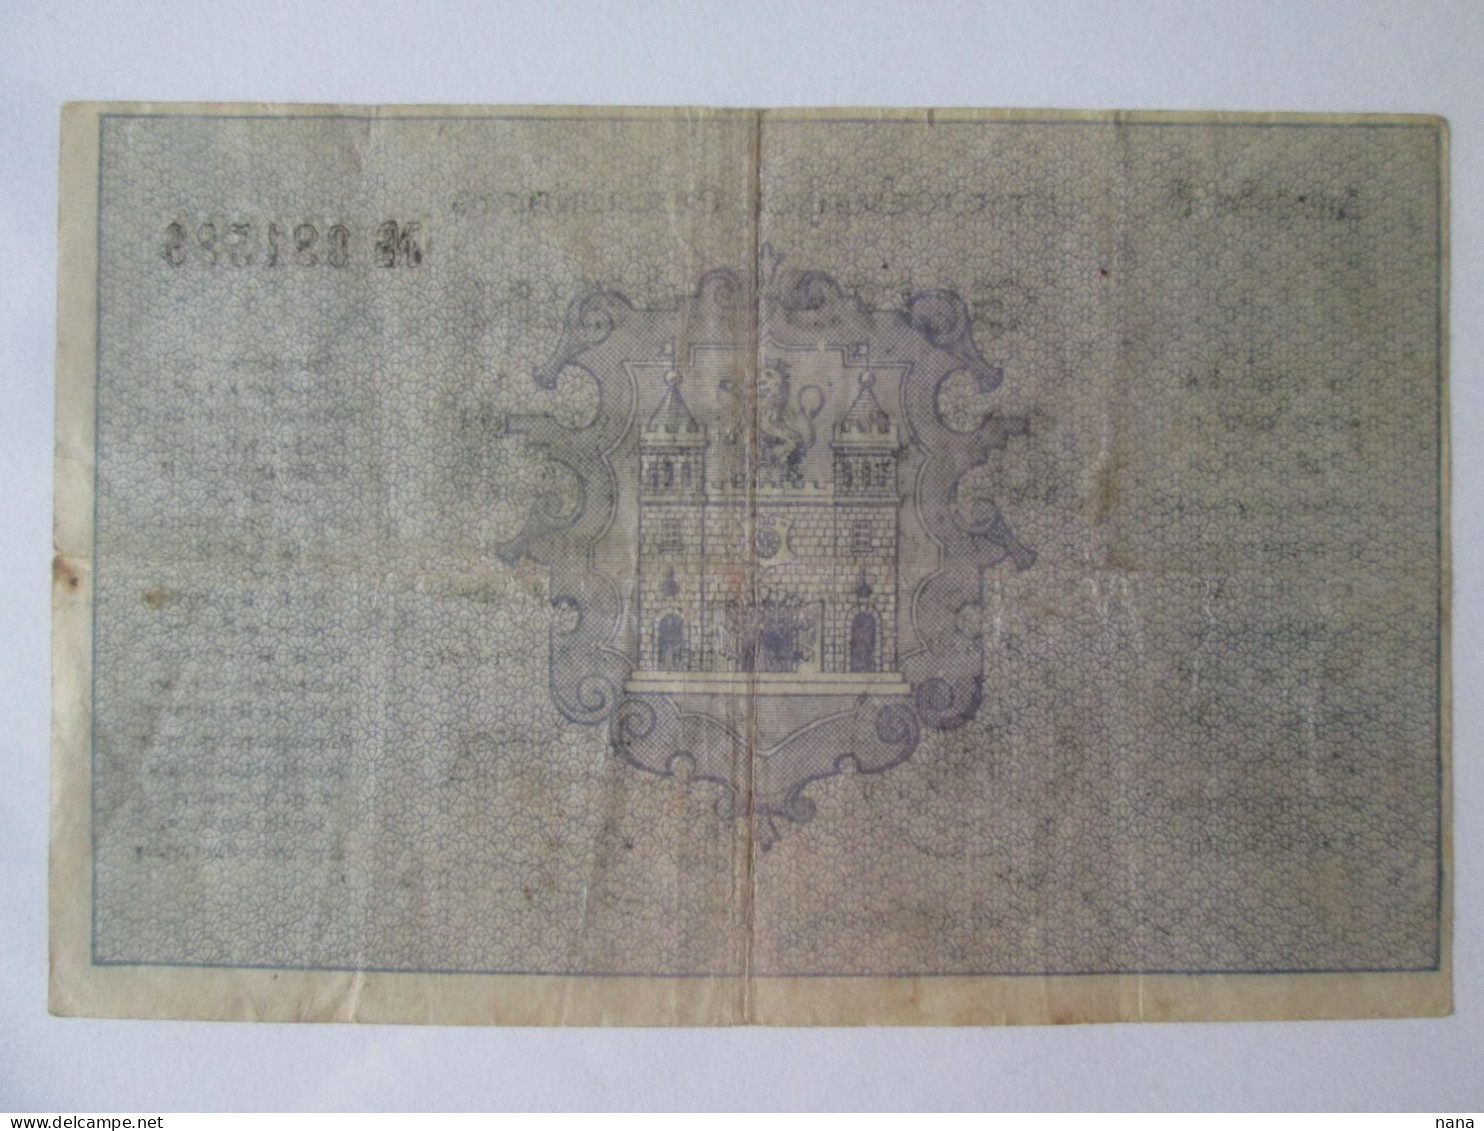 Czech Republic-Liberec/Reichenberg 10 Kronen 1919 Banknote Austrian Occupation WWI - Tchéquie